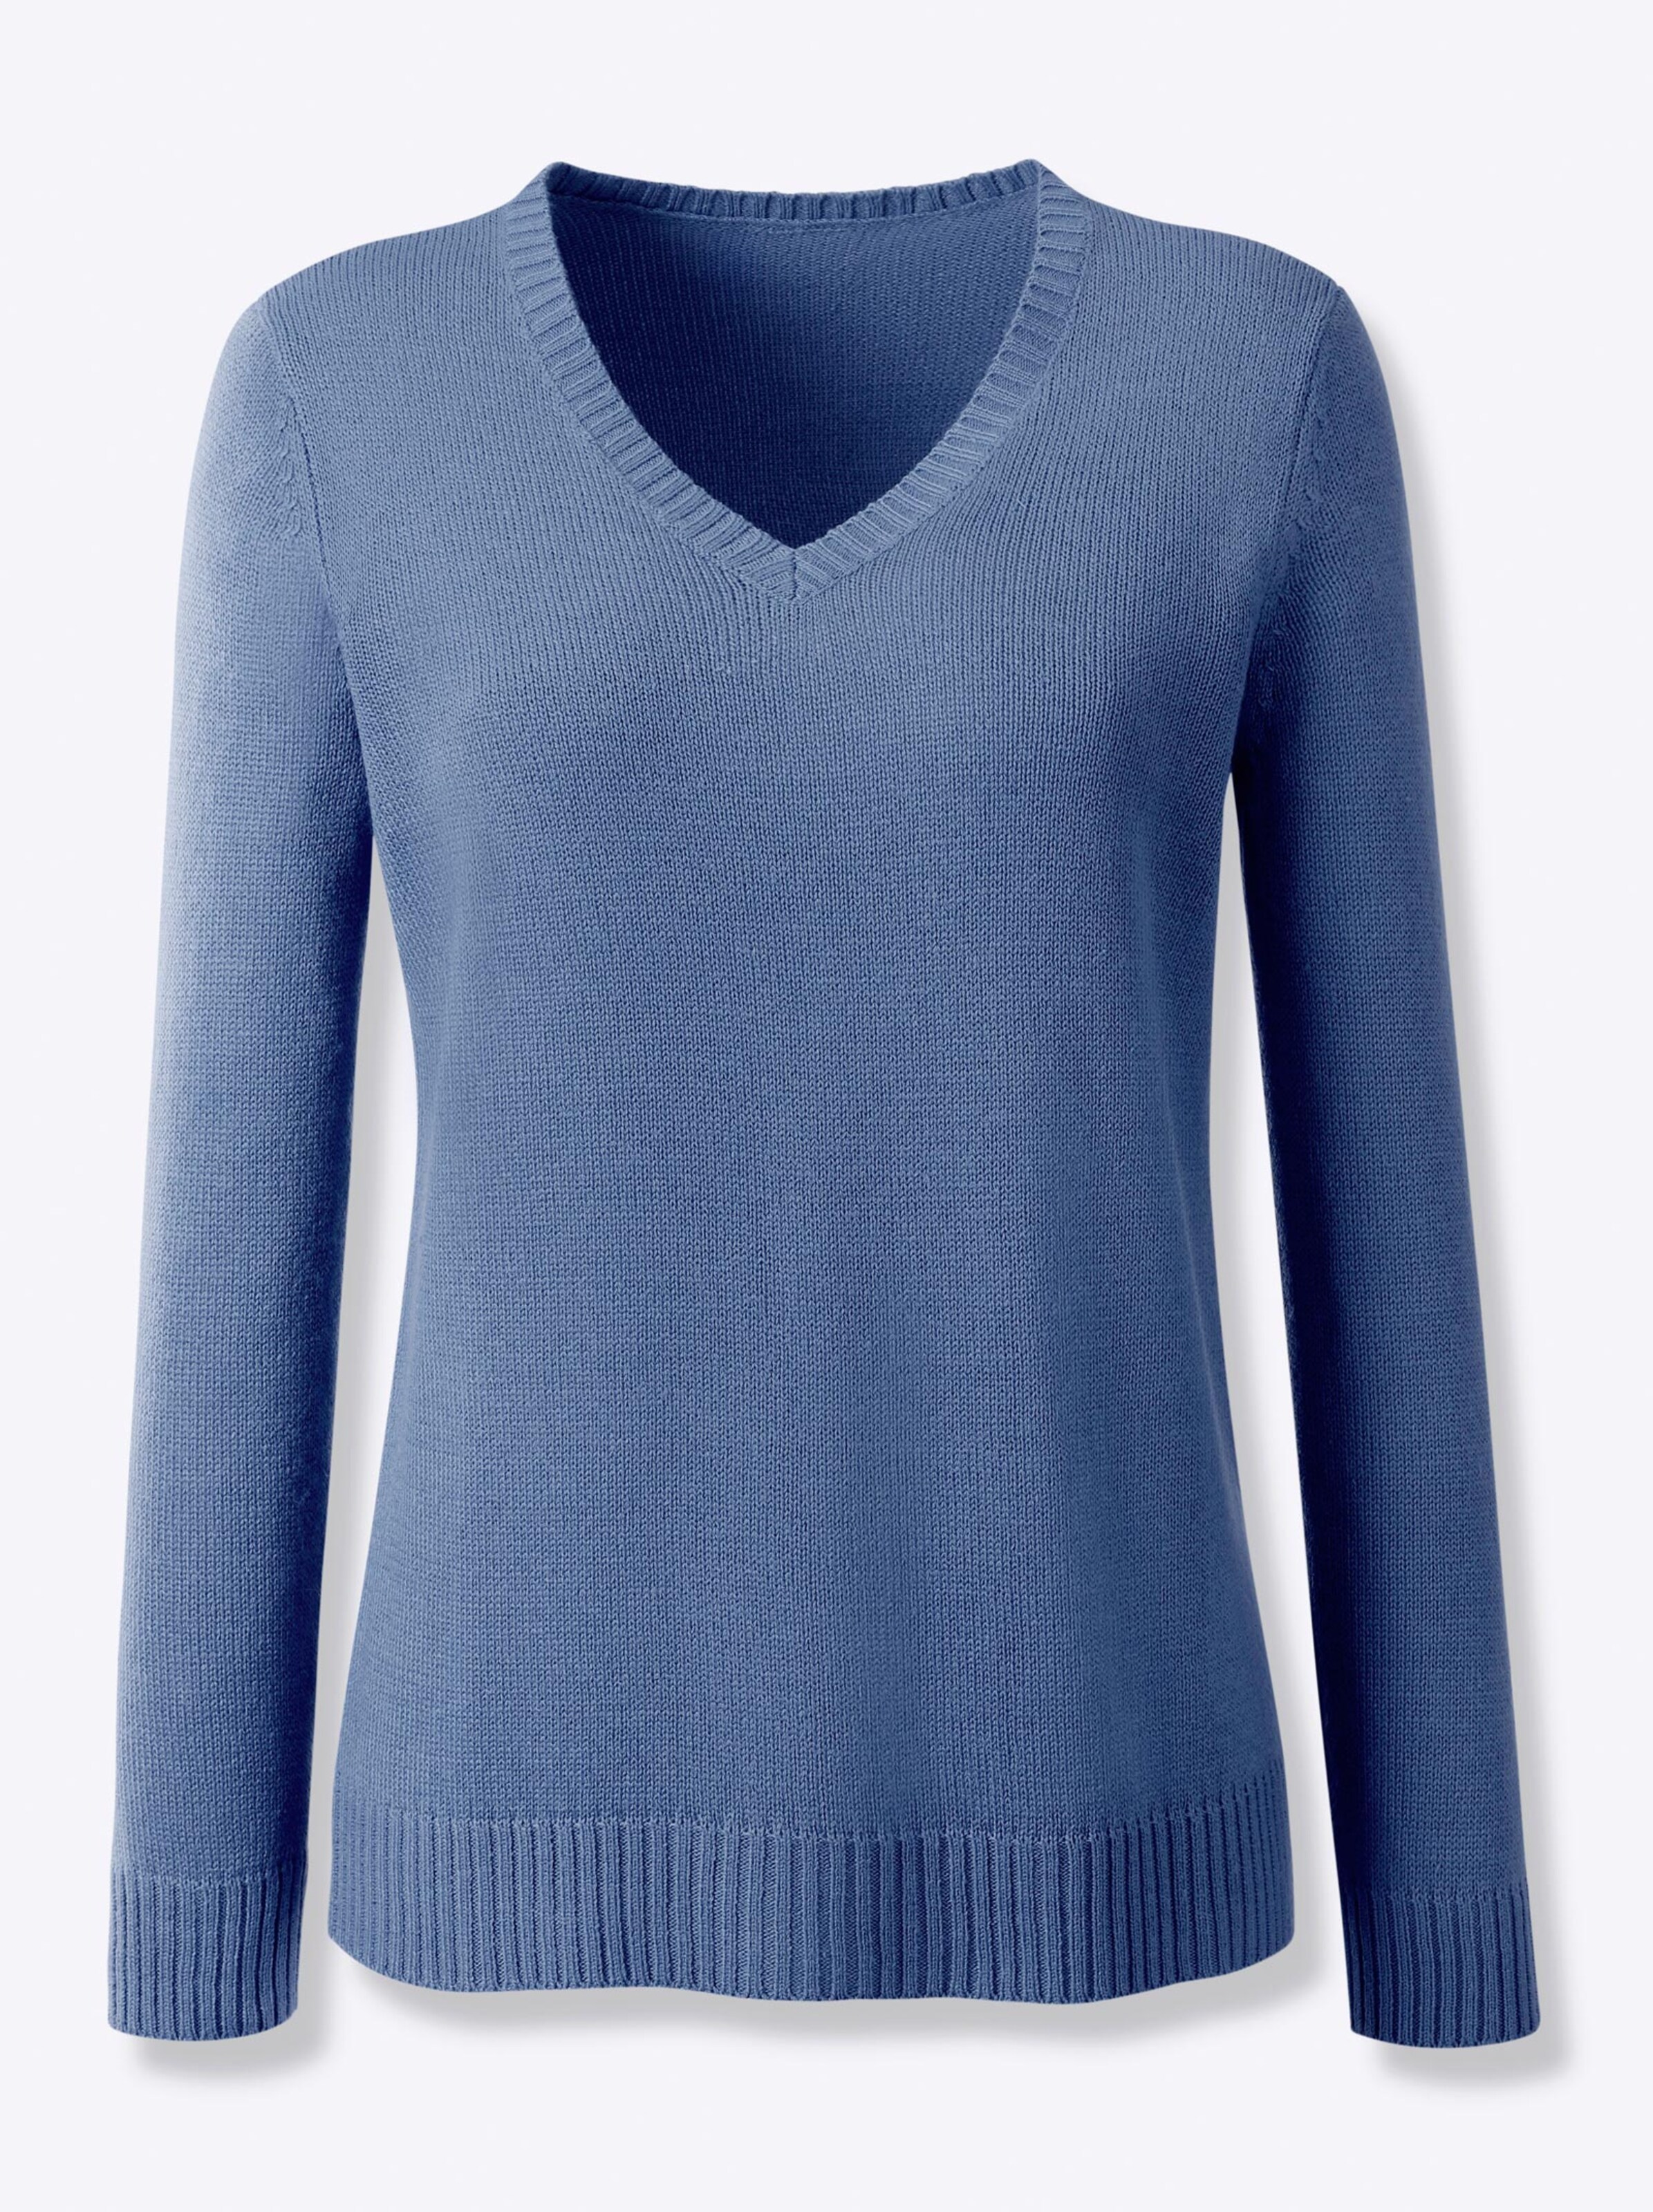 Damenmode Pullover V-Ausschnitt-Pullover in jeansblau 